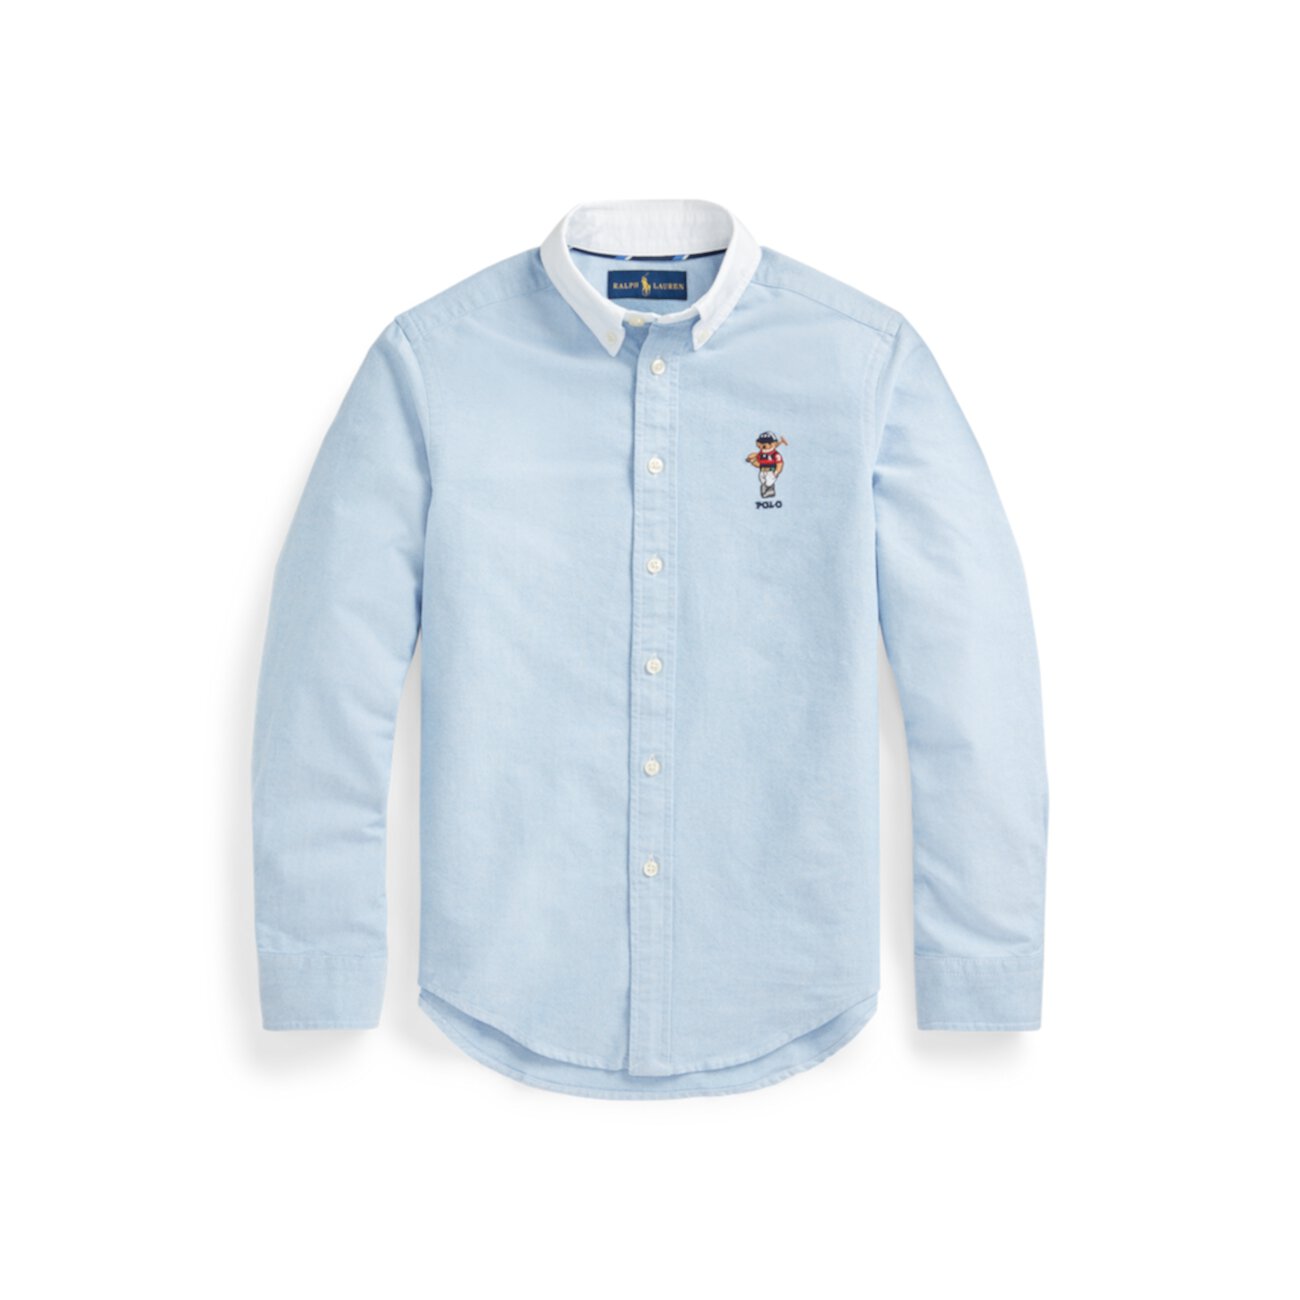 Хлопковая оксфордская рубашка Polo Bear Ralph Lauren